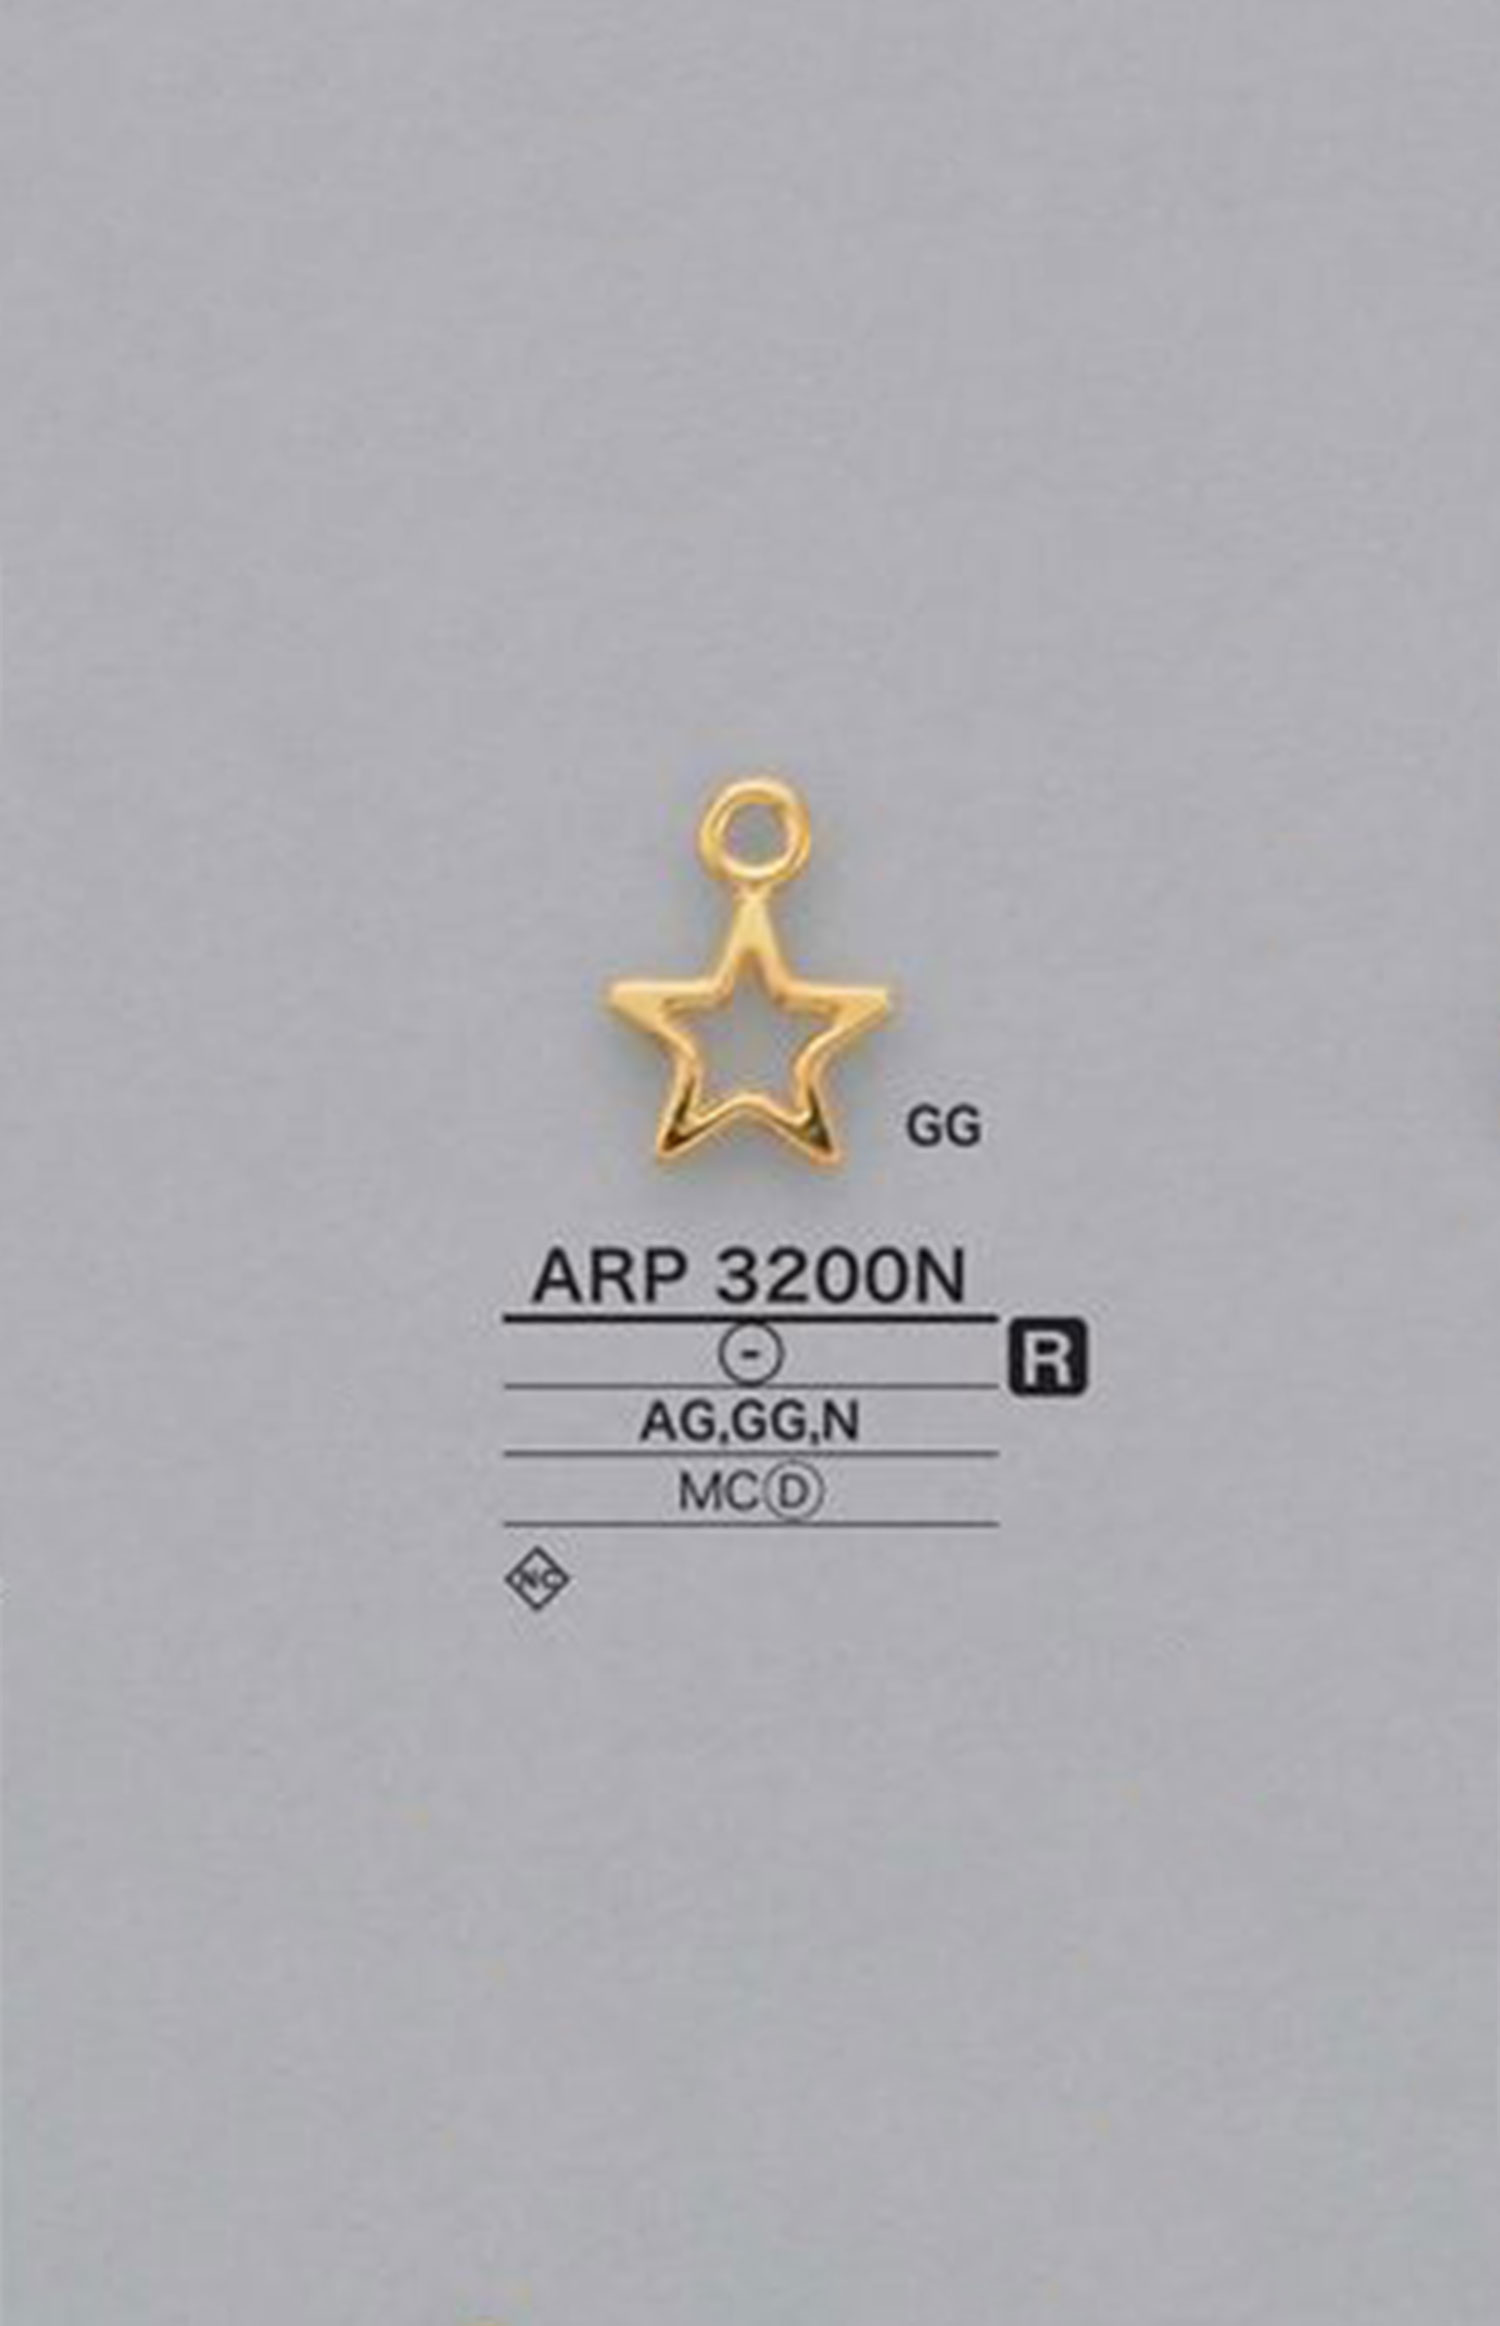 ARP3200N 星形图形元素零件[杂货等] 爱丽丝纽扣